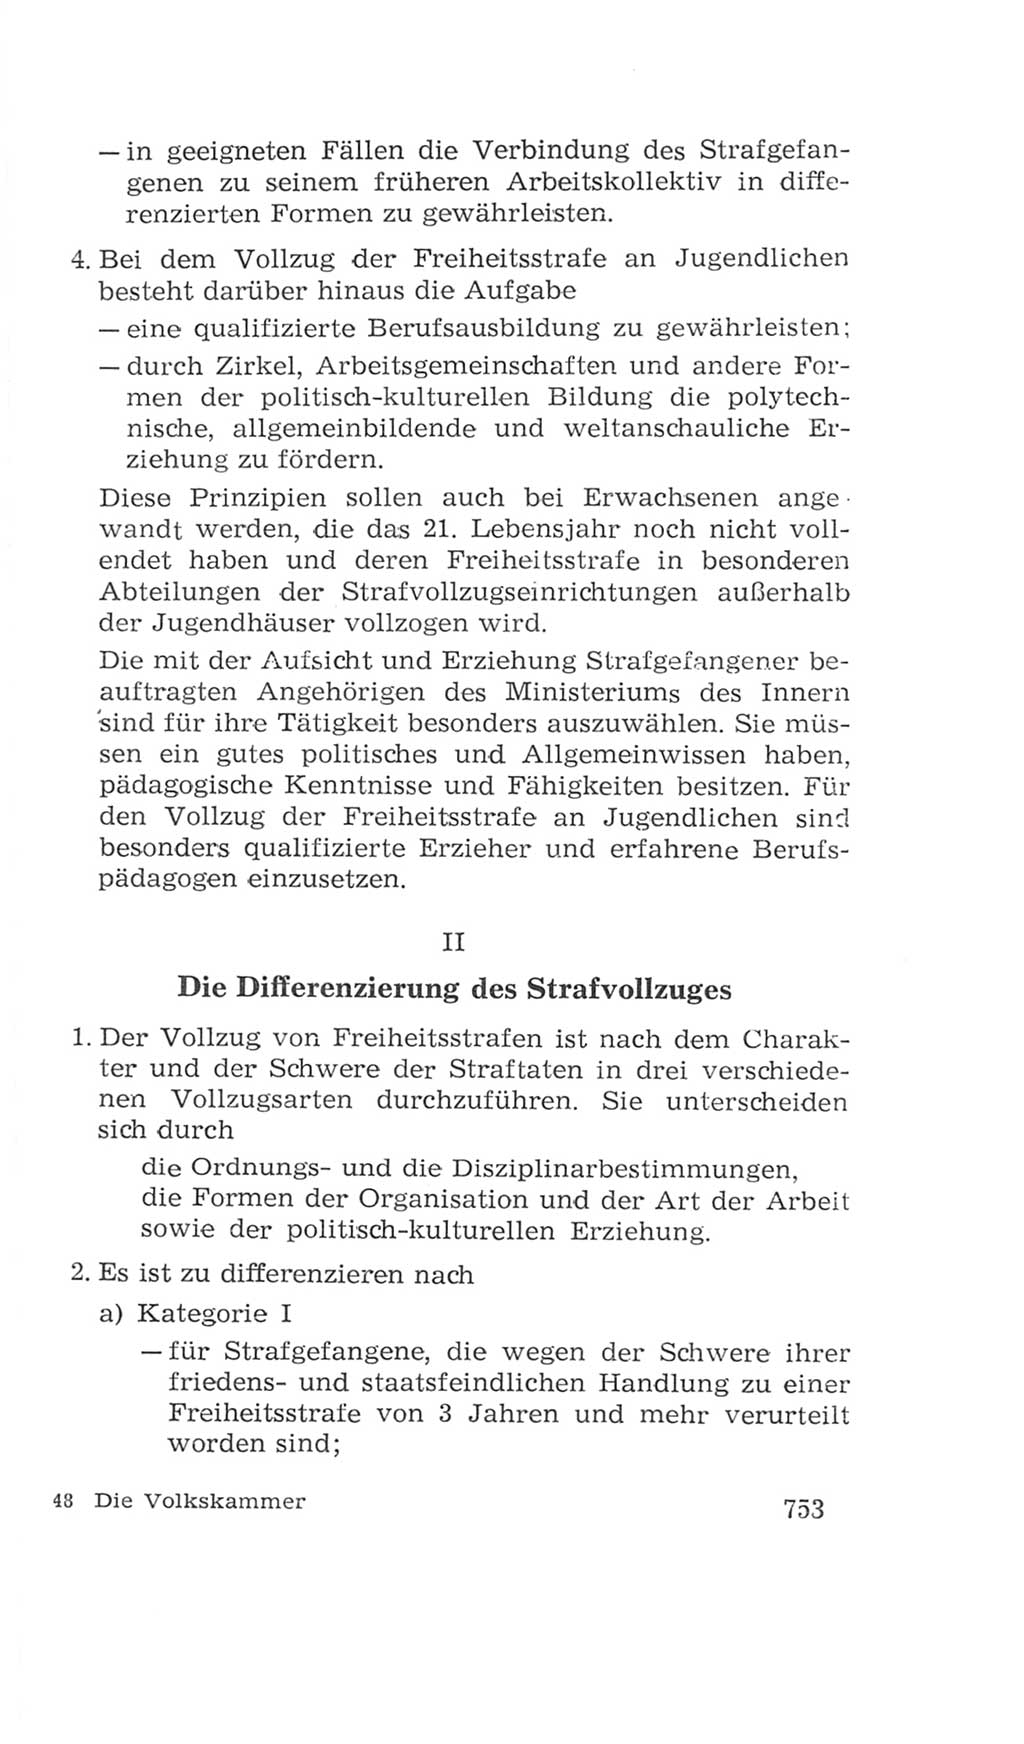 Volkskammer (VK) der Deutschen Demokratischen Republik (DDR), 4. Wahlperiode 1963-1967, Seite 753 (VK. DDR 4. WP. 1963-1967, S. 753)